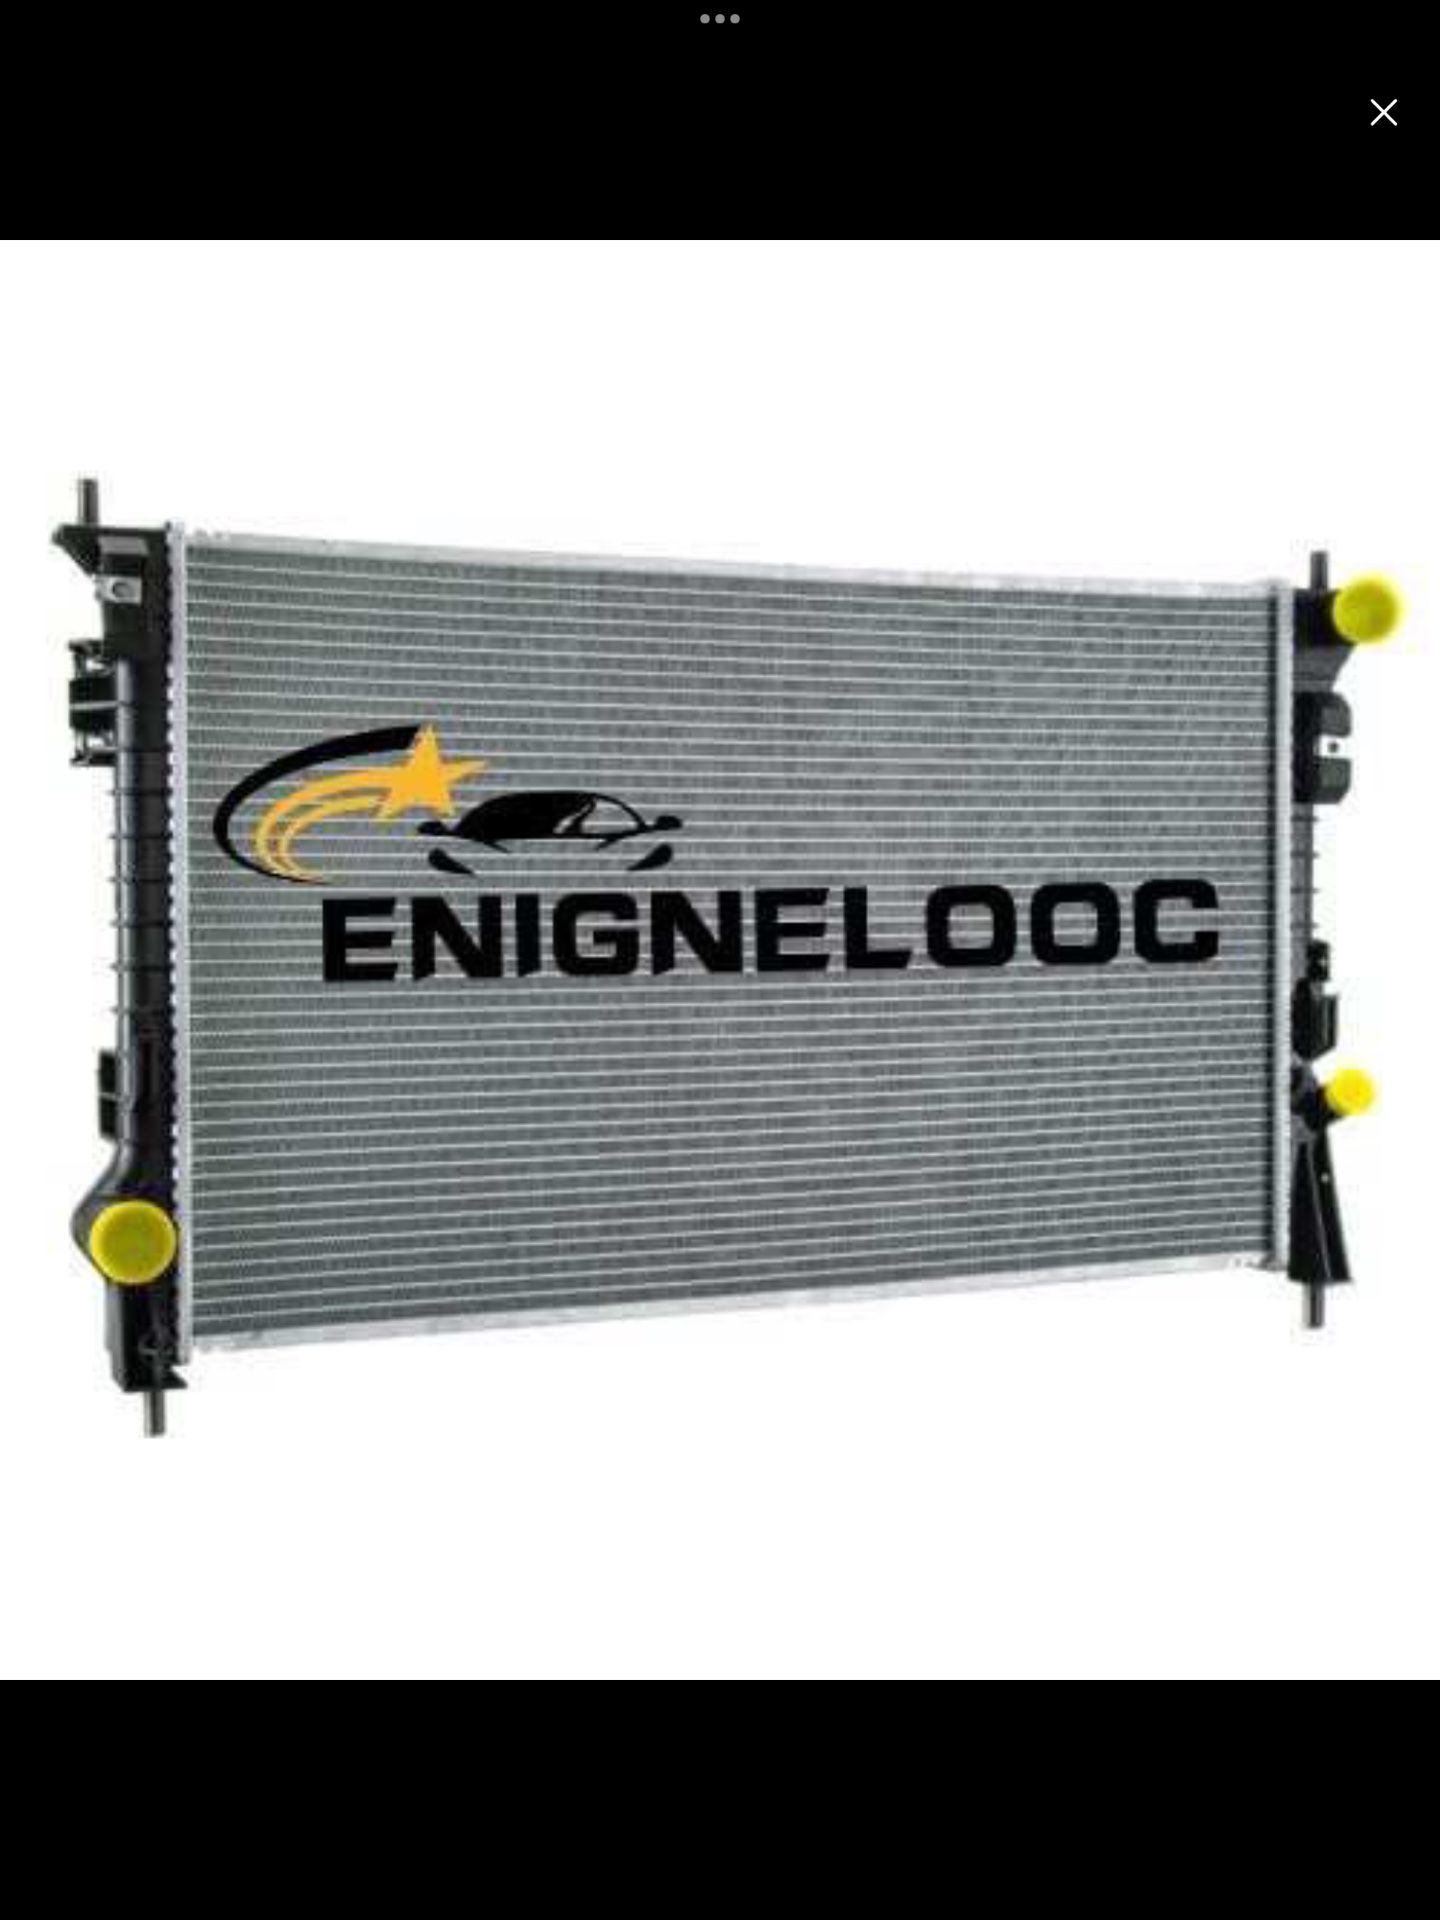 Enginelooc Aluminum Core Radiator 